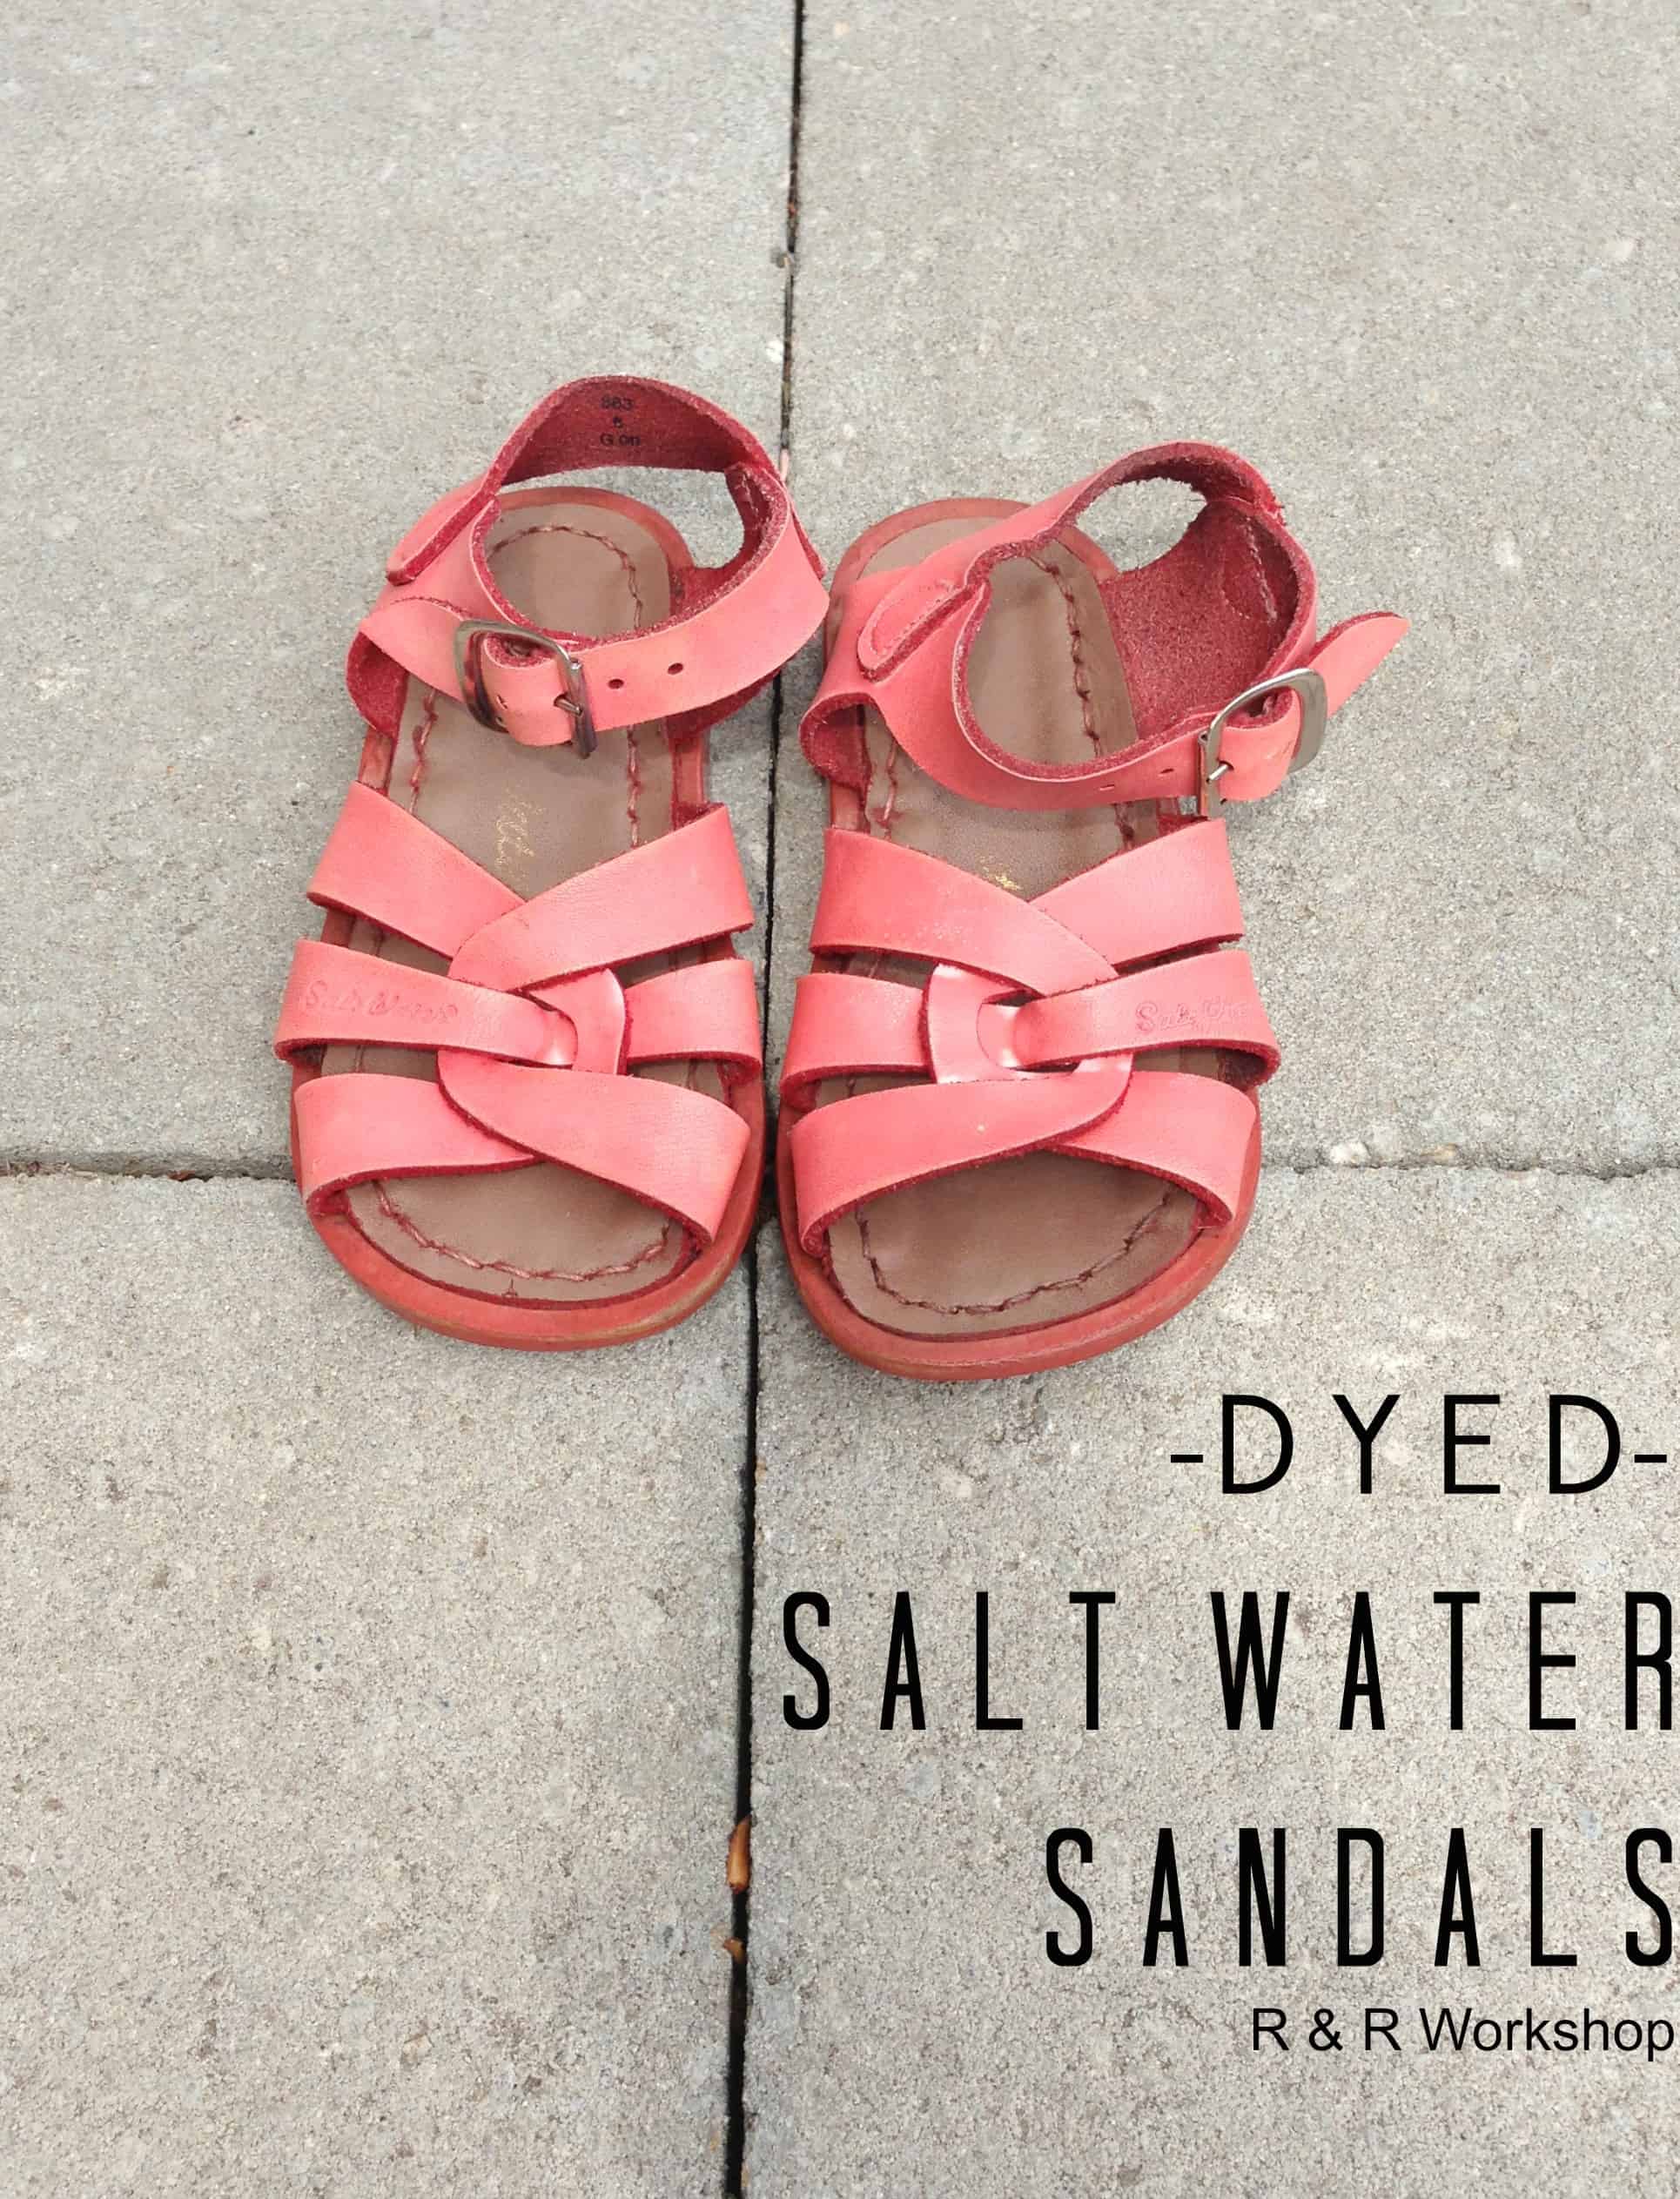 Dyed Salt Water Sandals: Summer Fun Series